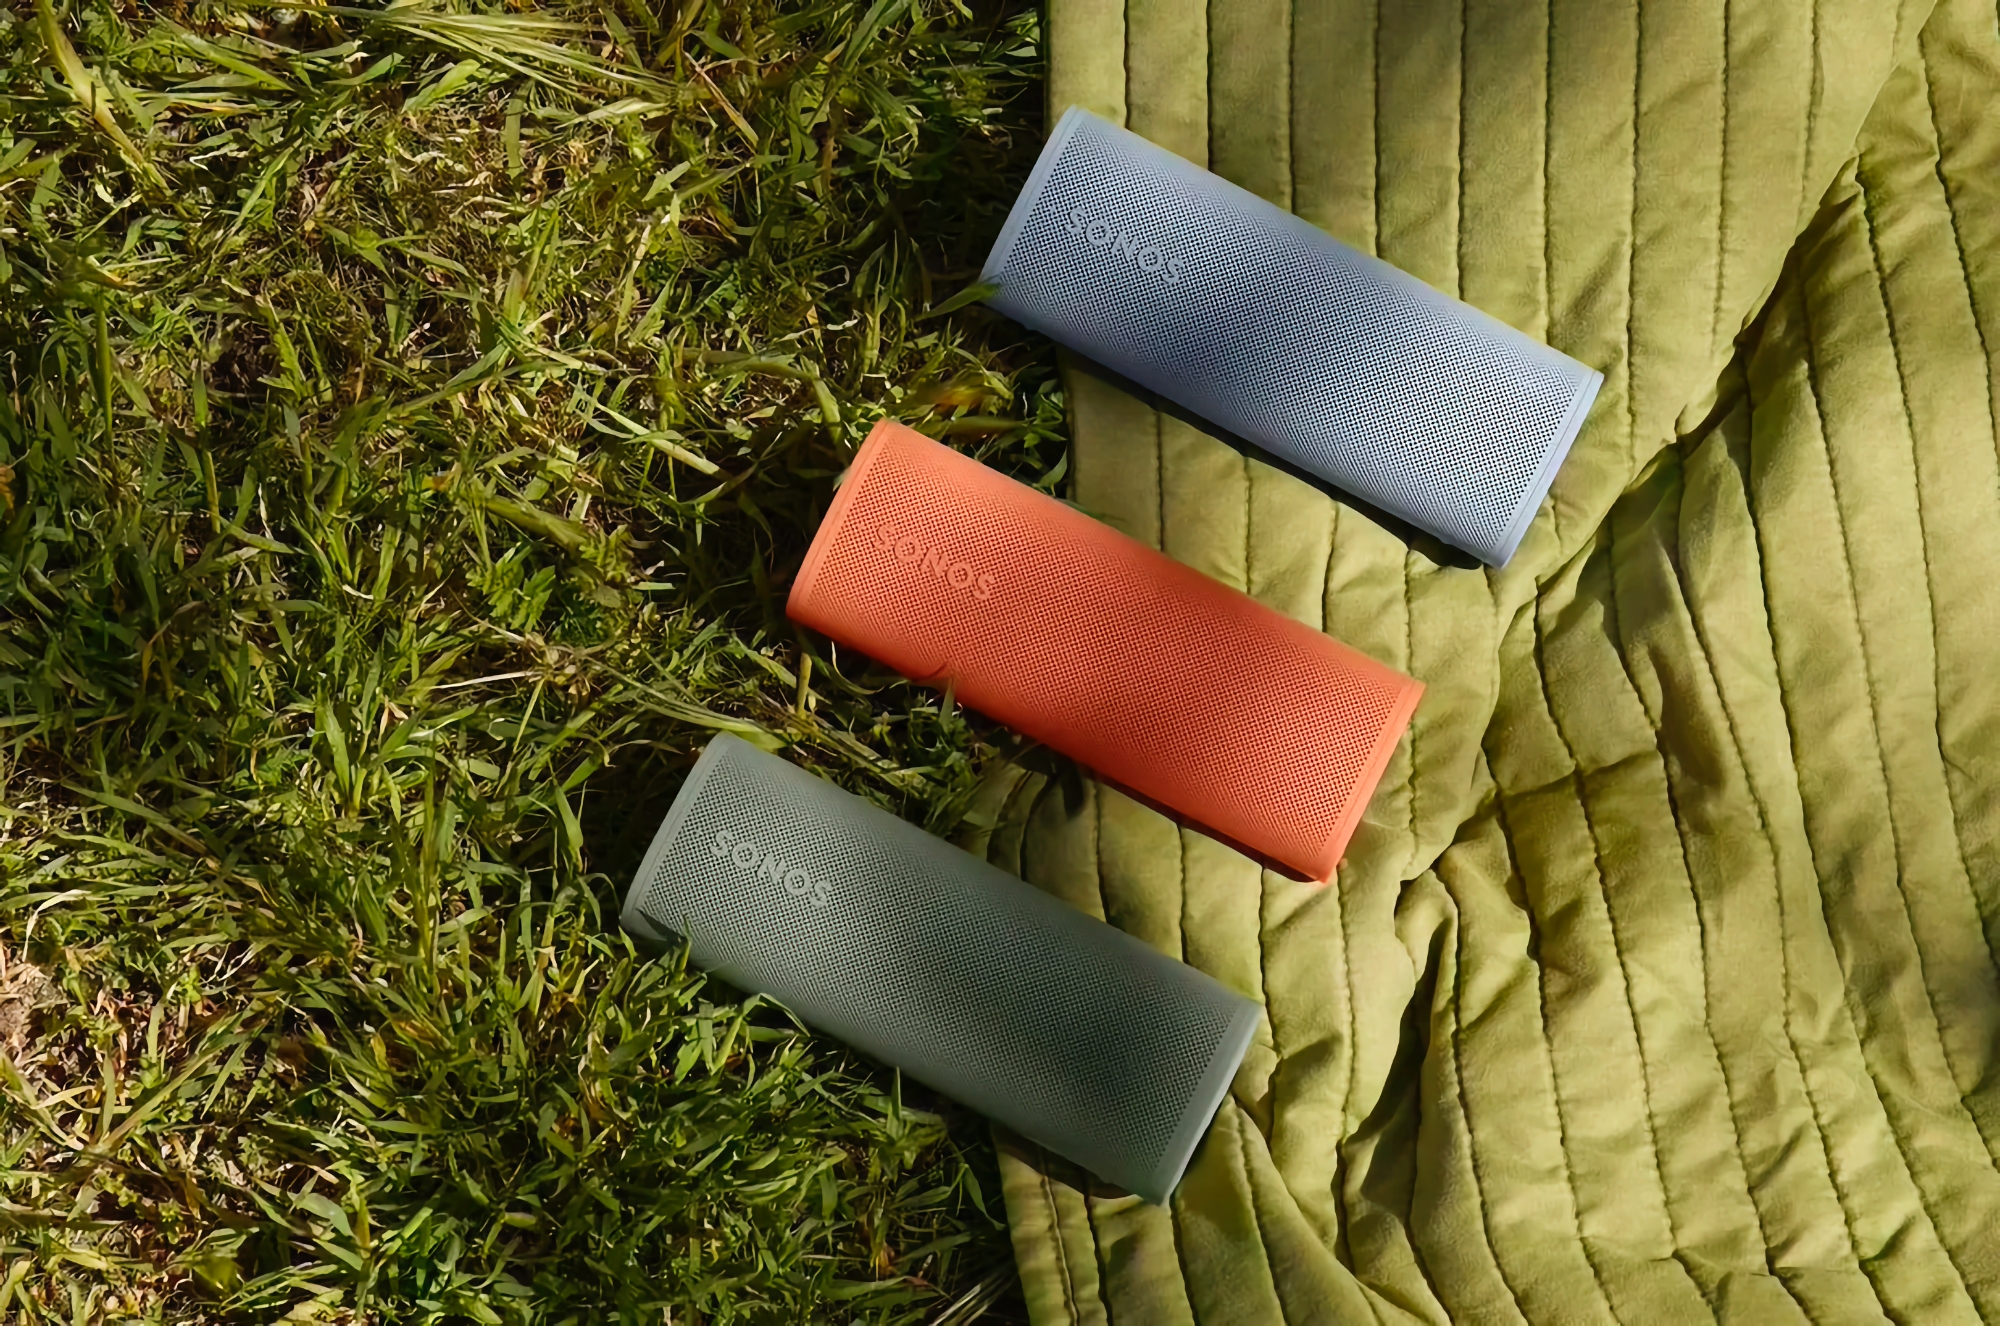 Sonos har presenterat den kompakta högtalaren Roam 2 med upp till 10 timmars batteritid och ett pris på $179